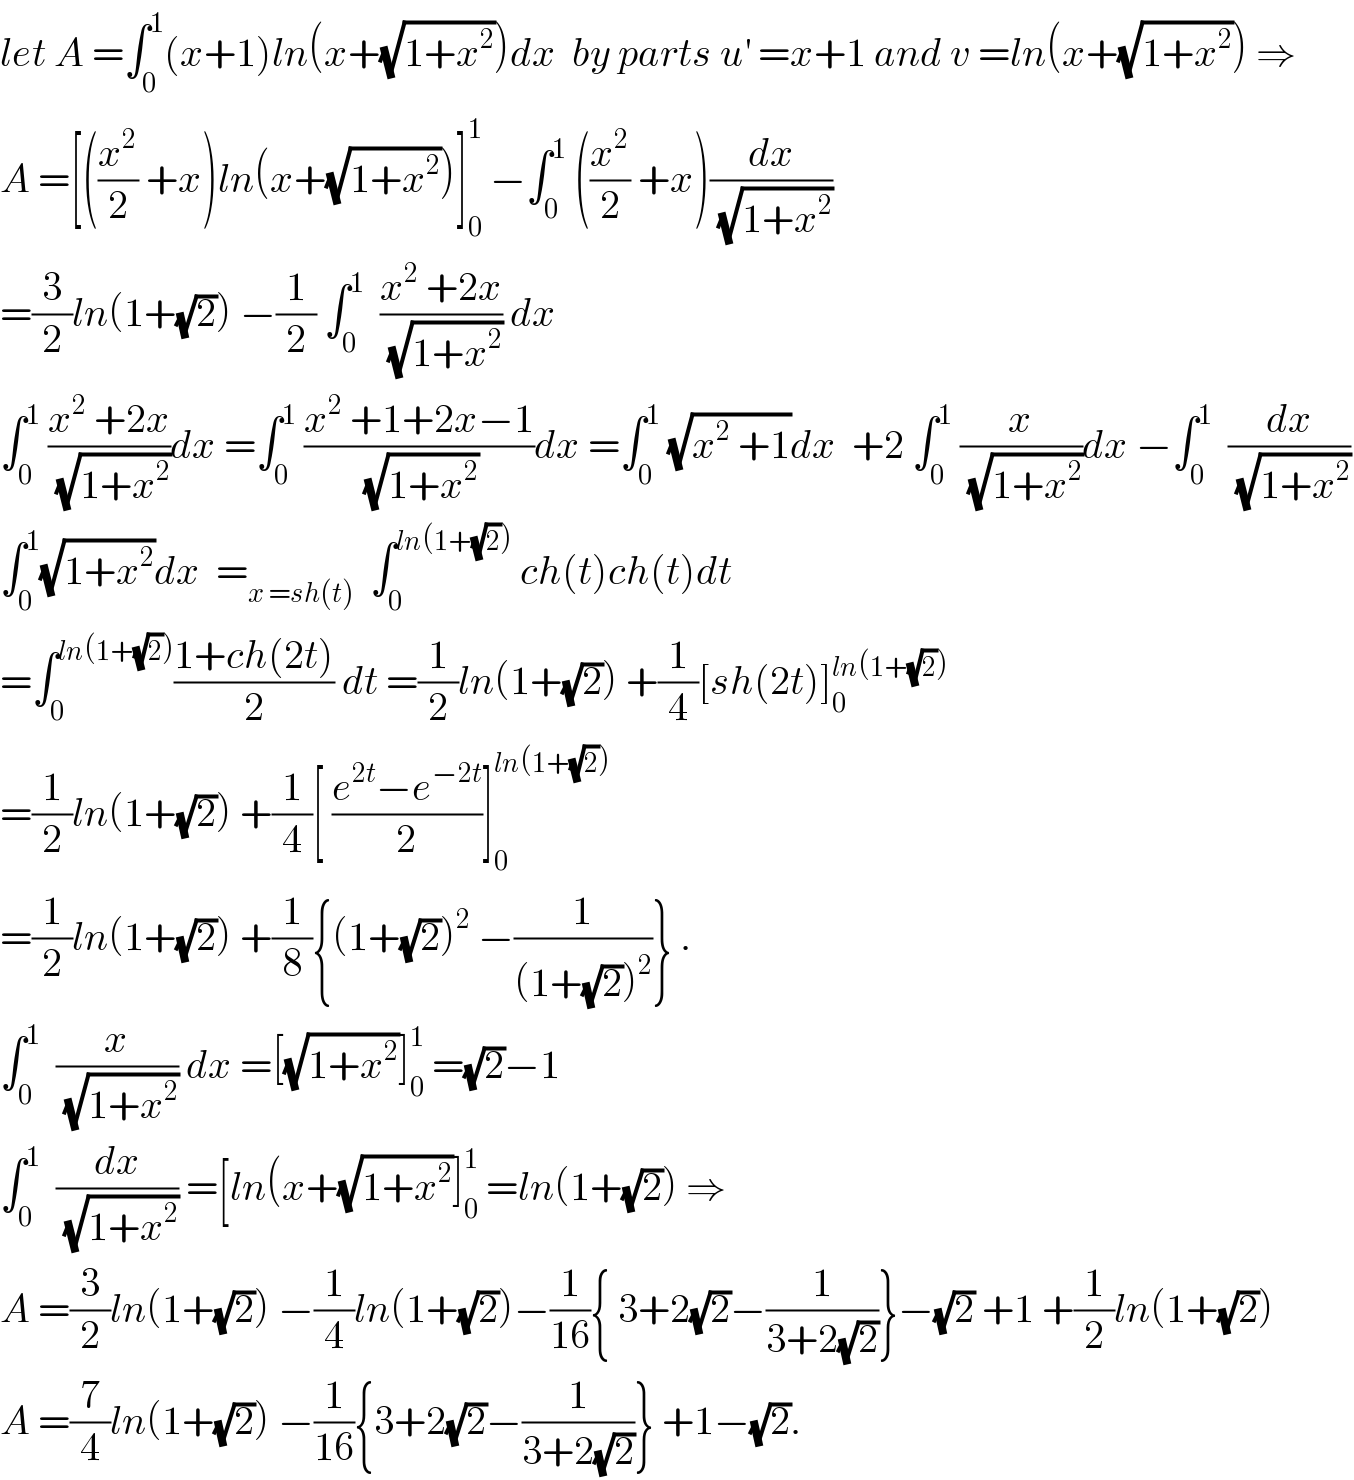 let A =∫_0 ^1 (x+1)ln(x+(√(1+x^2 )))dx  by parts u^′  =x+1 and v =ln(x+(√(1+x^2 ))) ⇒  A =[((x^2 /2) +x)ln(x+(√(1+x^2 )))]_0 ^1  −∫_0 ^1  ((x^2 /2) +x)(dx/(√(1+x^2 )))  =(3/2)ln(1+(√2)) −(1/2) ∫_0 ^1   ((x^2  +2x)/(√(1+x^2 ))) dx  ∫_0 ^1  ((x^2  +2x)/(√(1+x^2 )))dx =∫_0 ^1  ((x^2  +1+2x−1)/(√(1+x^2 )))dx =∫_0 ^1  (√(x^2  +1))dx  +2 ∫_0 ^1  (x/(√(1+x^2 )))dx −∫_0 ^1   (dx/(√(1+x^2 )))  ∫_0 ^1 (√(1+x^2 ))dx  =_(x =sh(t))   ∫_0 ^(ln(1+(√2)))  ch(t)ch(t)dt  =∫_0 ^(ln(1+(√2))) ((1+ch(2t))/2) dt =(1/2)ln(1+(√2)) +(1/4)[sh(2t)]_0 ^(ln(1+(√2)))   =(1/2)ln(1+(√2)) +(1/4)[ ((e^(2t) −e^(−2t) )/2)]_0 ^(ln(1+(√2)))   =(1/2)ln(1+(√2)) +(1/8){(1+(√2))^2  −(1/((1+(√2))^2 ))} .  ∫_0 ^1   (x/(√(1+x^2 ))) dx =[(√(1+x^2 ))]_0 ^1  =(√2)−1  ∫_0 ^1   (dx/(√(1+x^2 ))) =[ln(x+(√(1+x^2 ))]_0 ^1  =ln(1+(√2)) ⇒  A =(3/2)ln(1+(√2)) −(1/4)ln(1+(√2))−(1/(16)){ 3+2(√2)−(1/(3+2(√2)))}−(√2) +1 +(1/2)ln(1+(√2))  A =(7/4)ln(1+(√2)) −(1/(16)){3+2(√2)−(1/(3+2(√2)))} +1−(√2).  